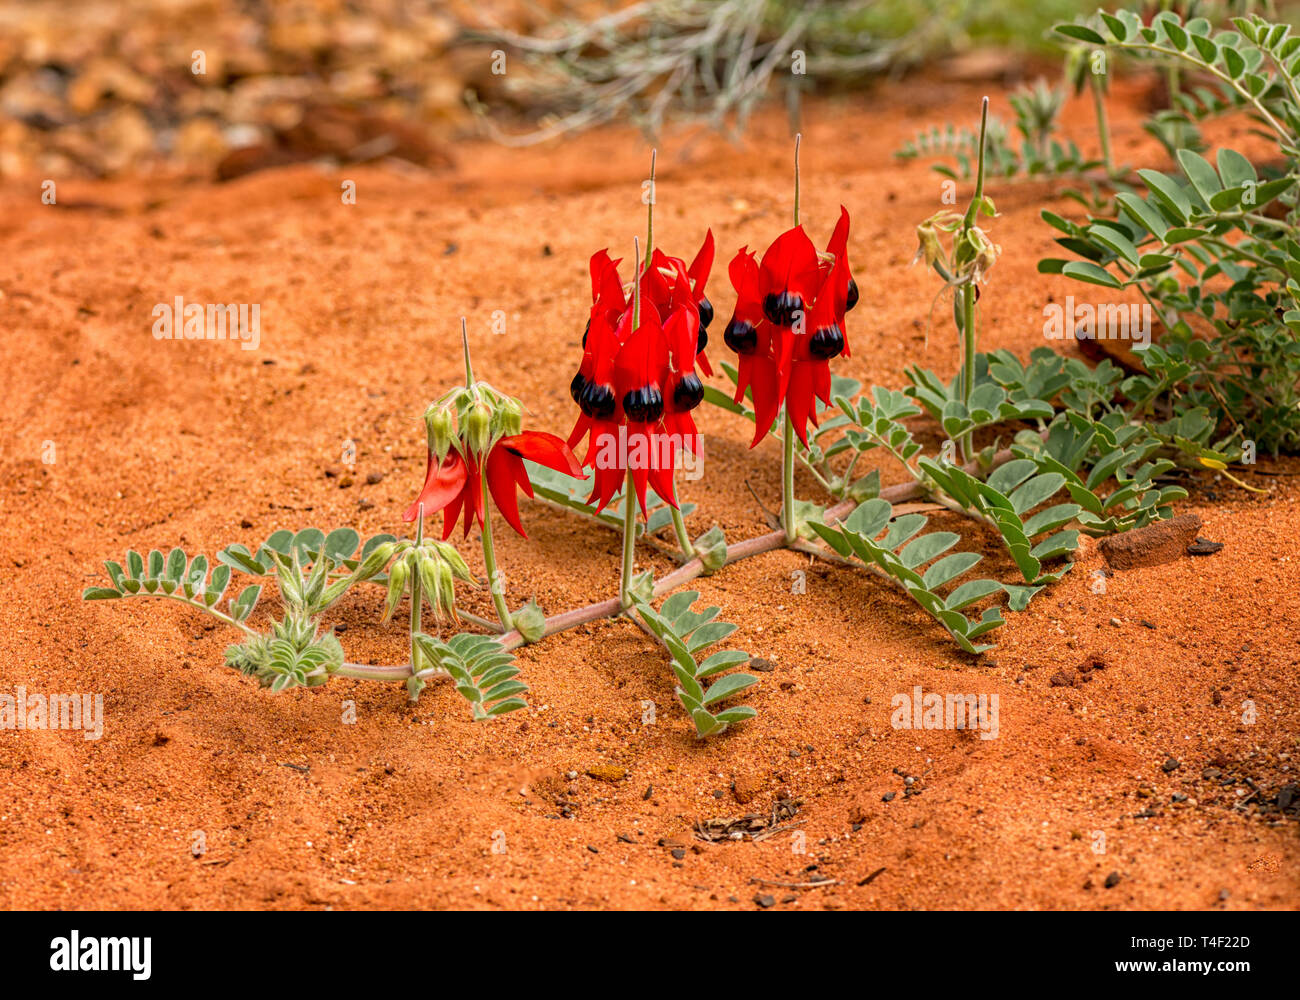 Swainsona formosa, Fabaceae, fiore emblema del Sud Australia si trova spesso nel deserto. Foto Stock